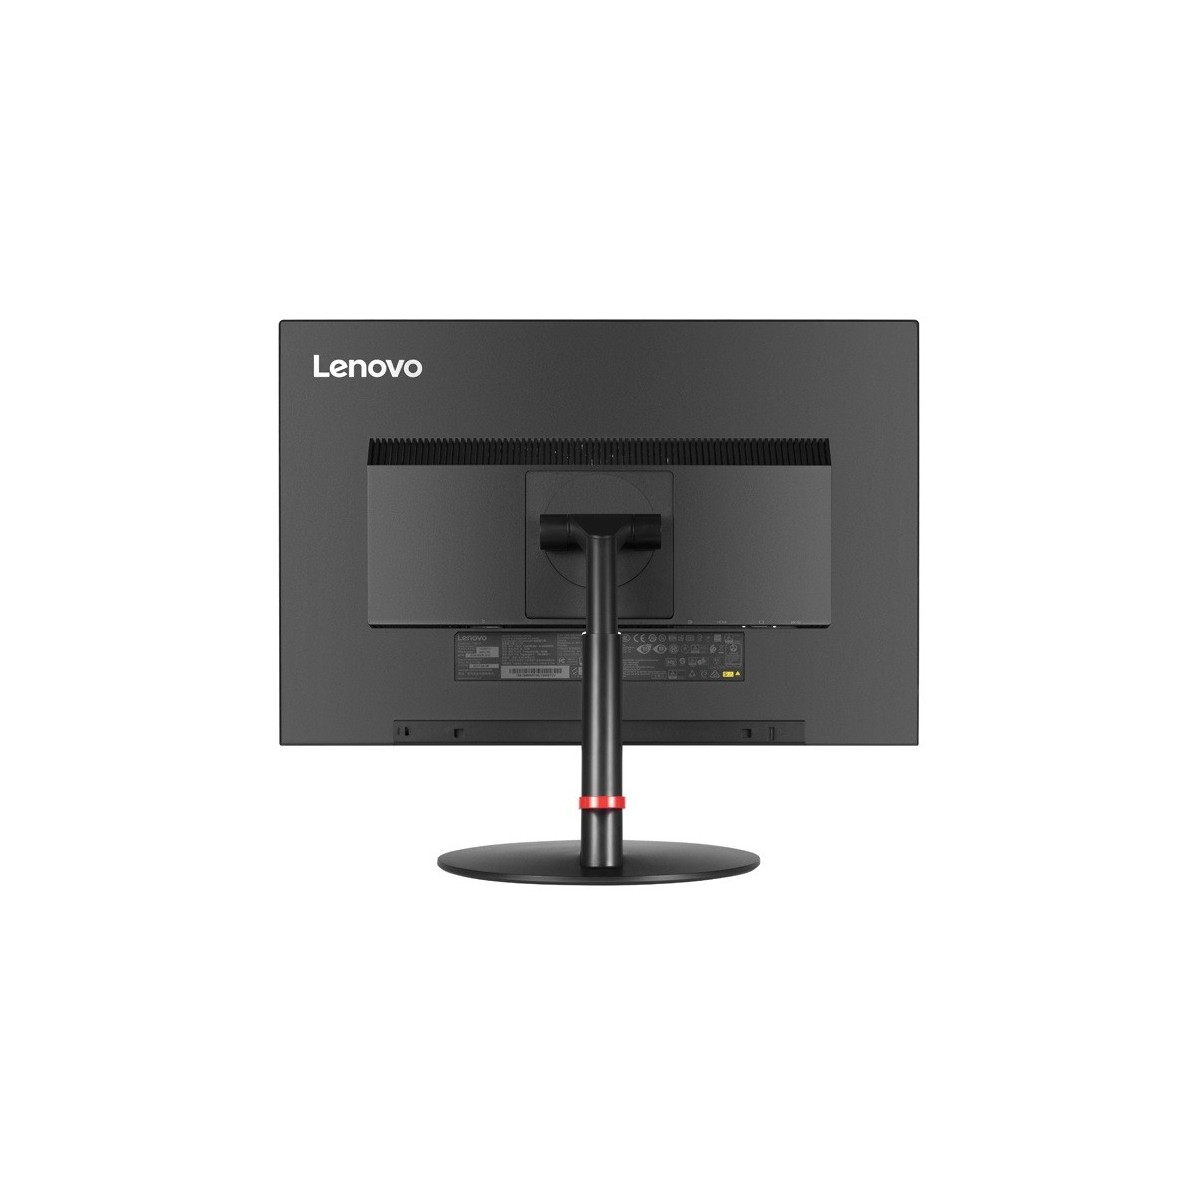 Lenovo ThinkVision T24d - 61 cm (24) - 1920 x 1200 pixels - WUXGA - LED - 7 ms - Black